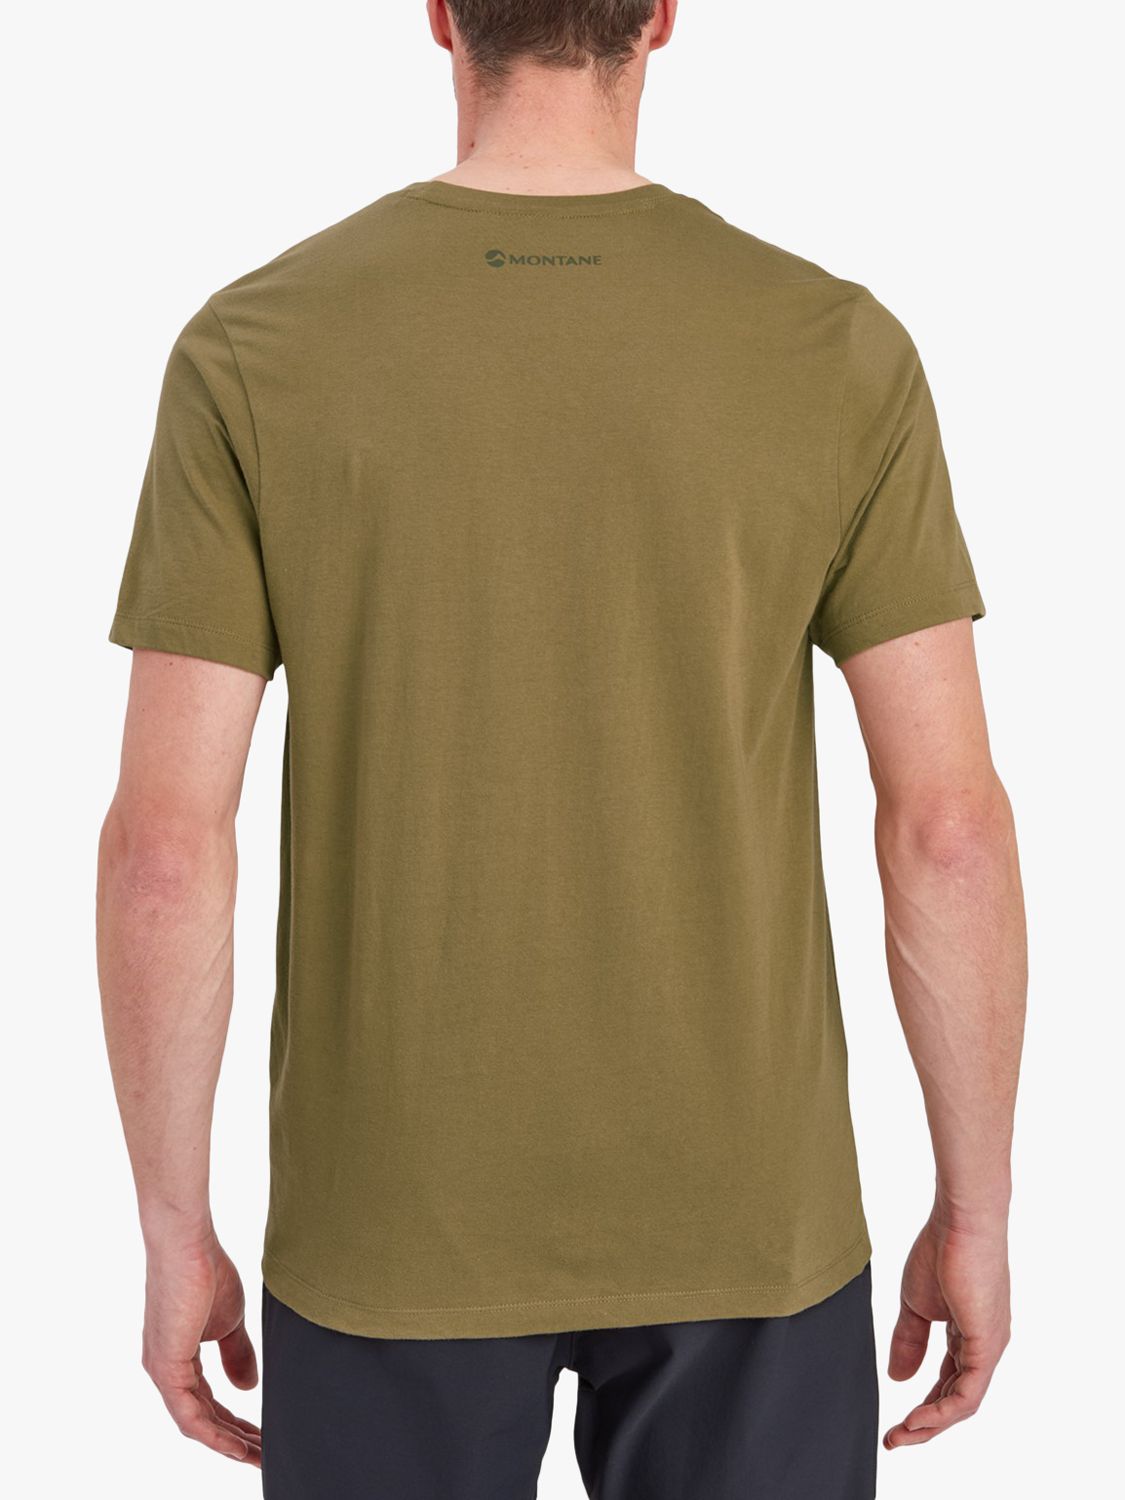 Montane Mono Logo Organic Cotton T-Shirt, Olive, XS